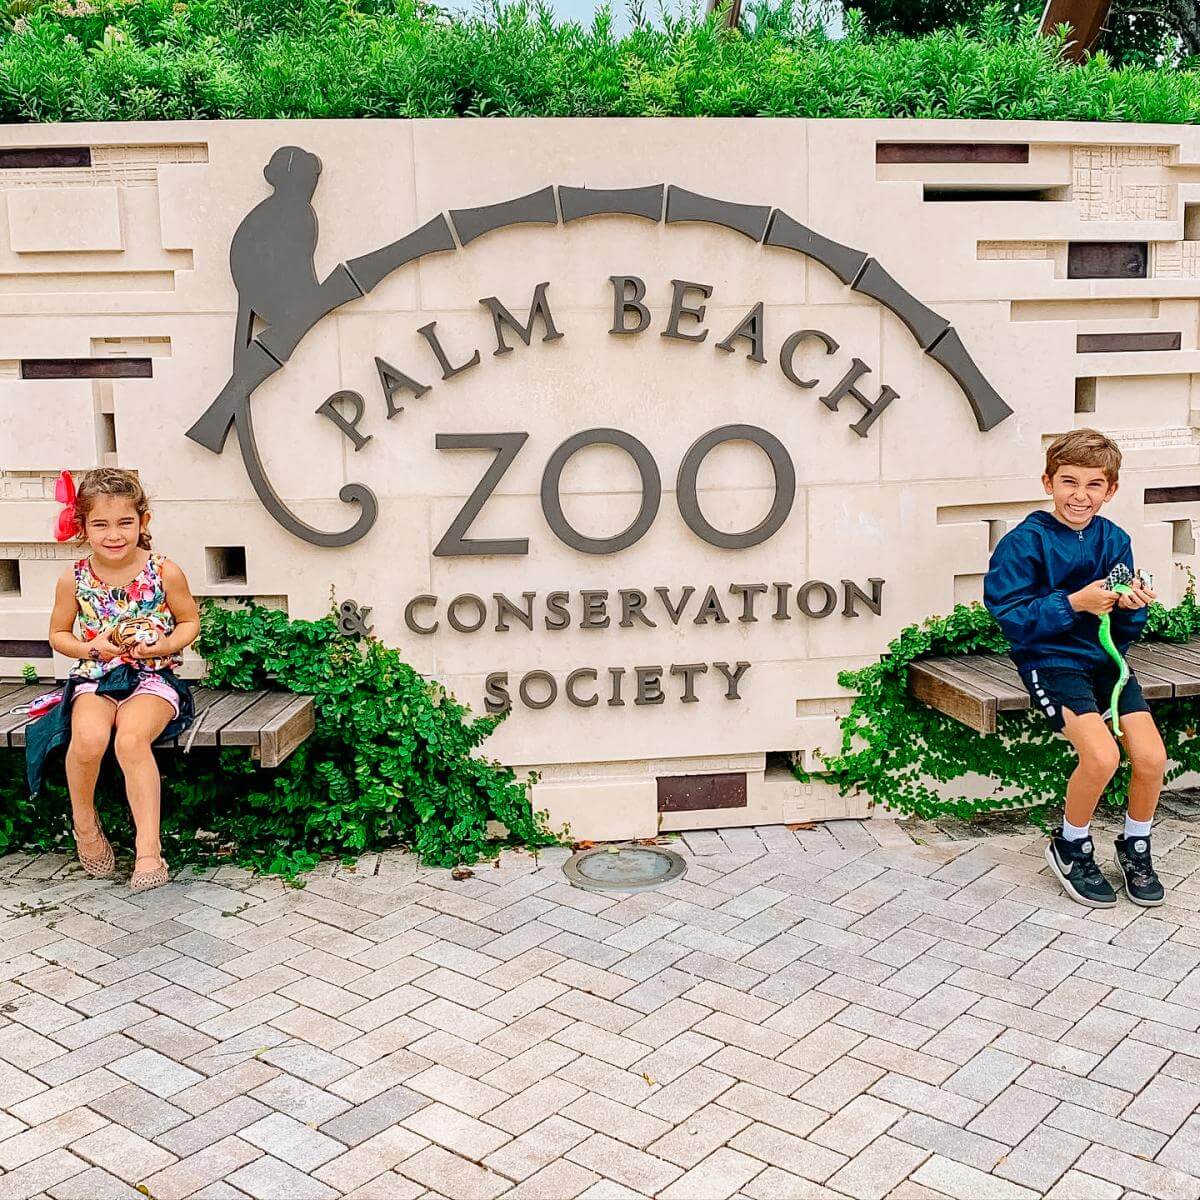 Palm Beach Zoo Facebook Post